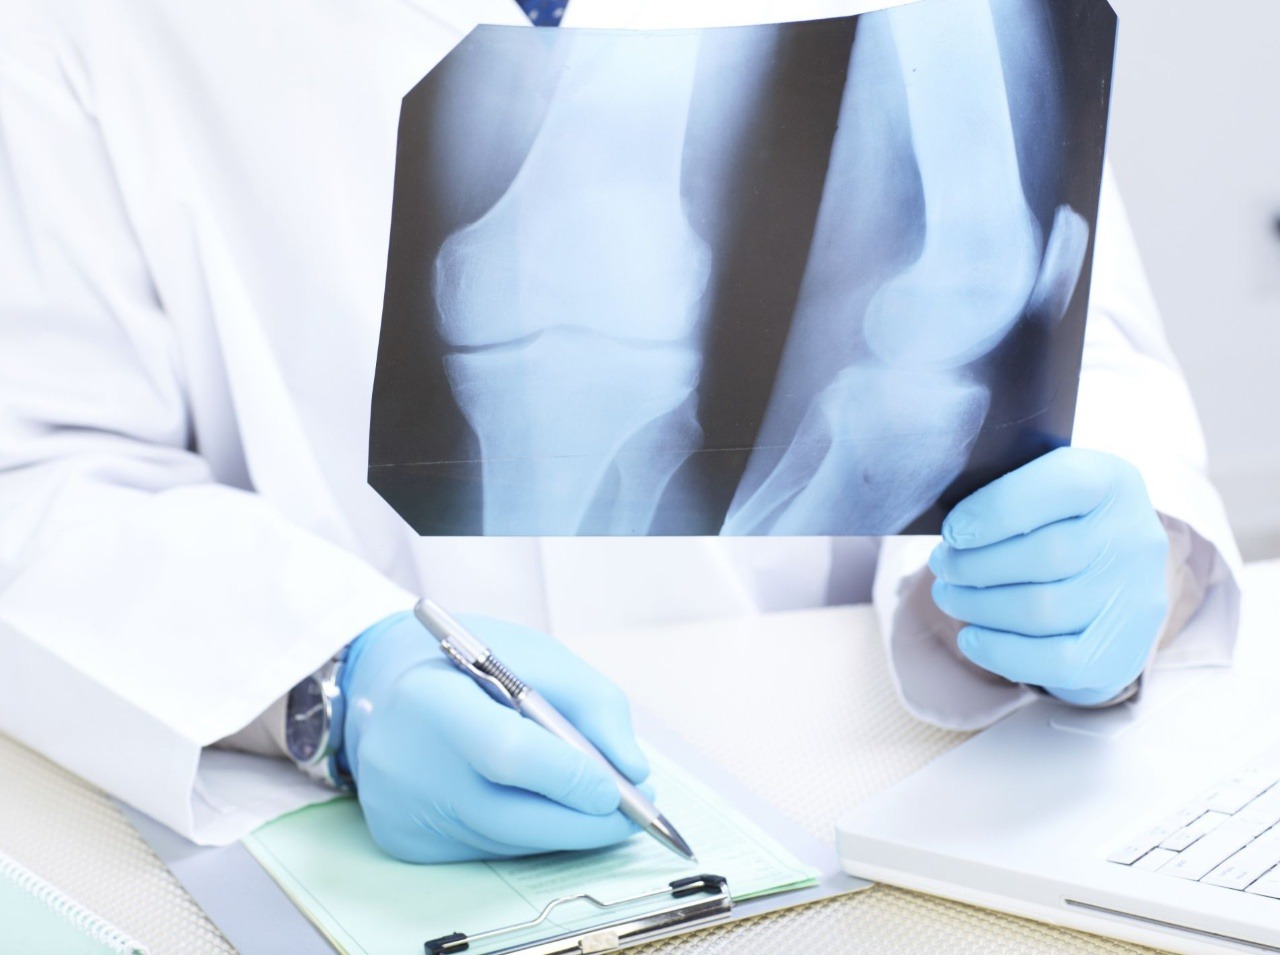 Liptovská nemocnica uviedla do prevádzky nový digitálny röntgen. (Ilustračná fotografia)